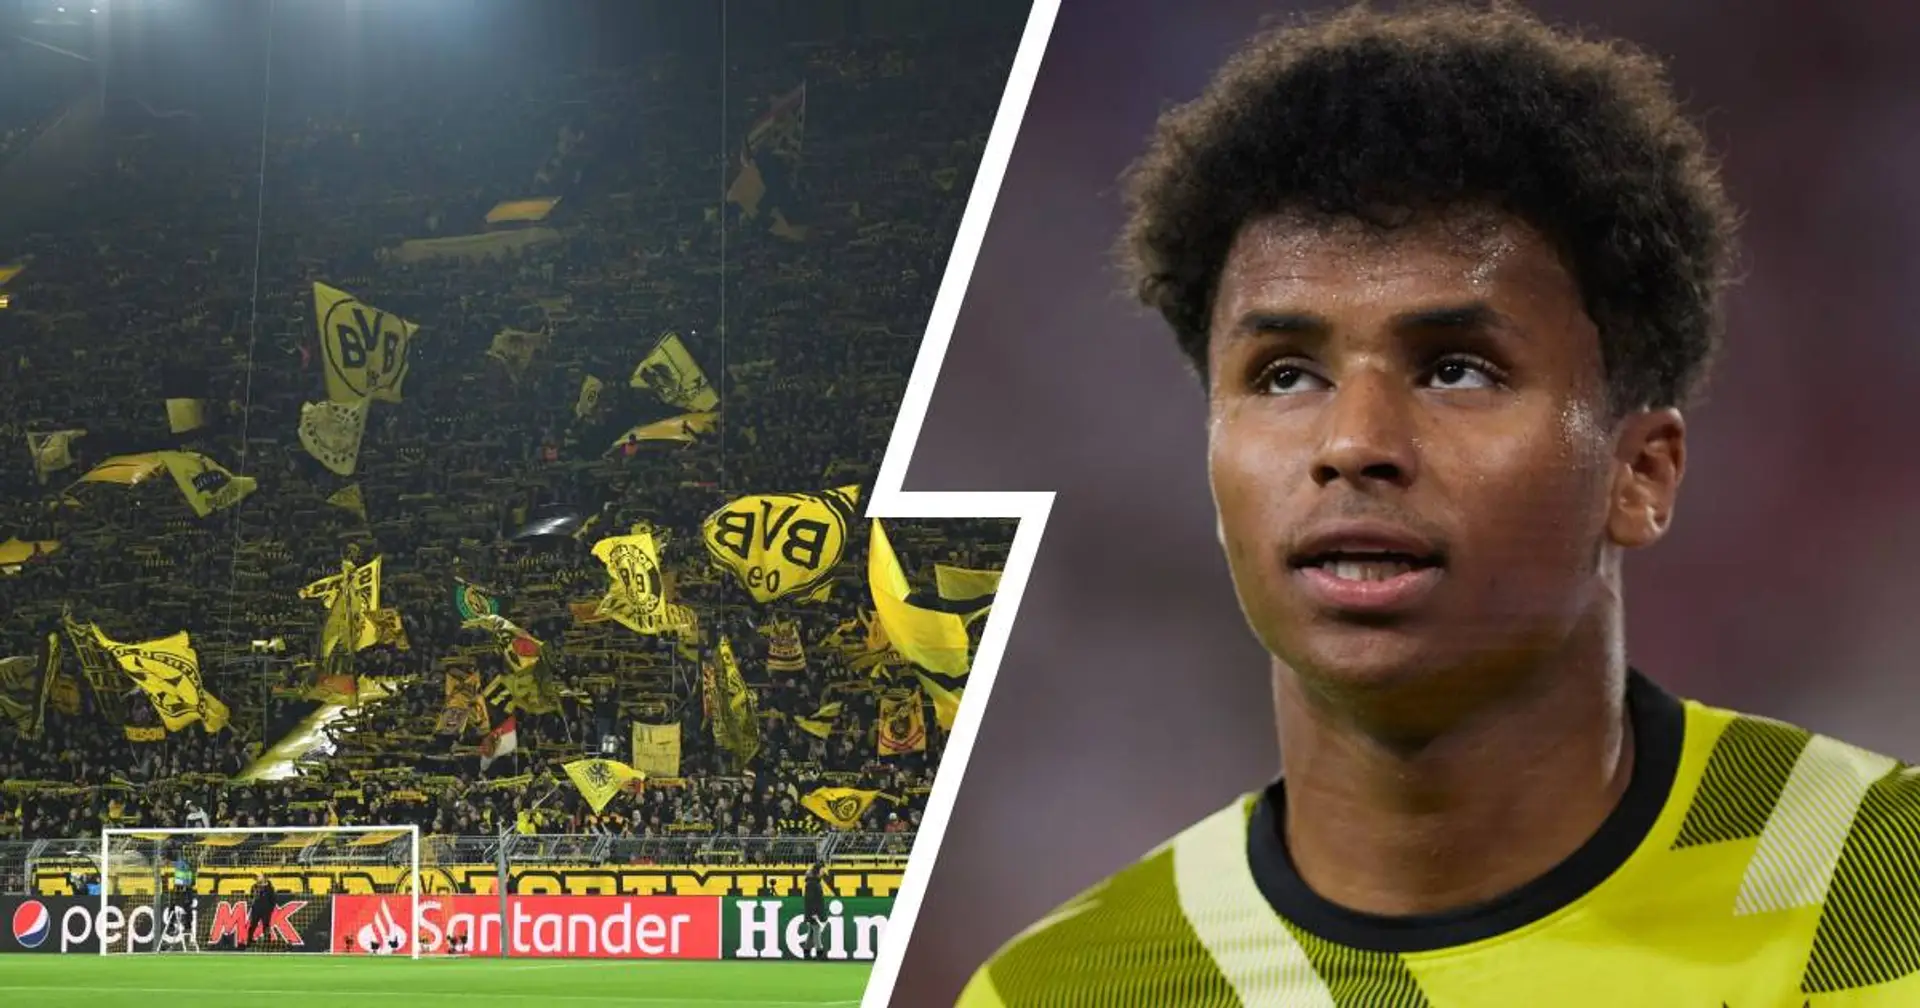 "Ein Tor habe ich in Dortmund noch nicht geschossen": Adeyemi will das schnellstmöglich korrigieren